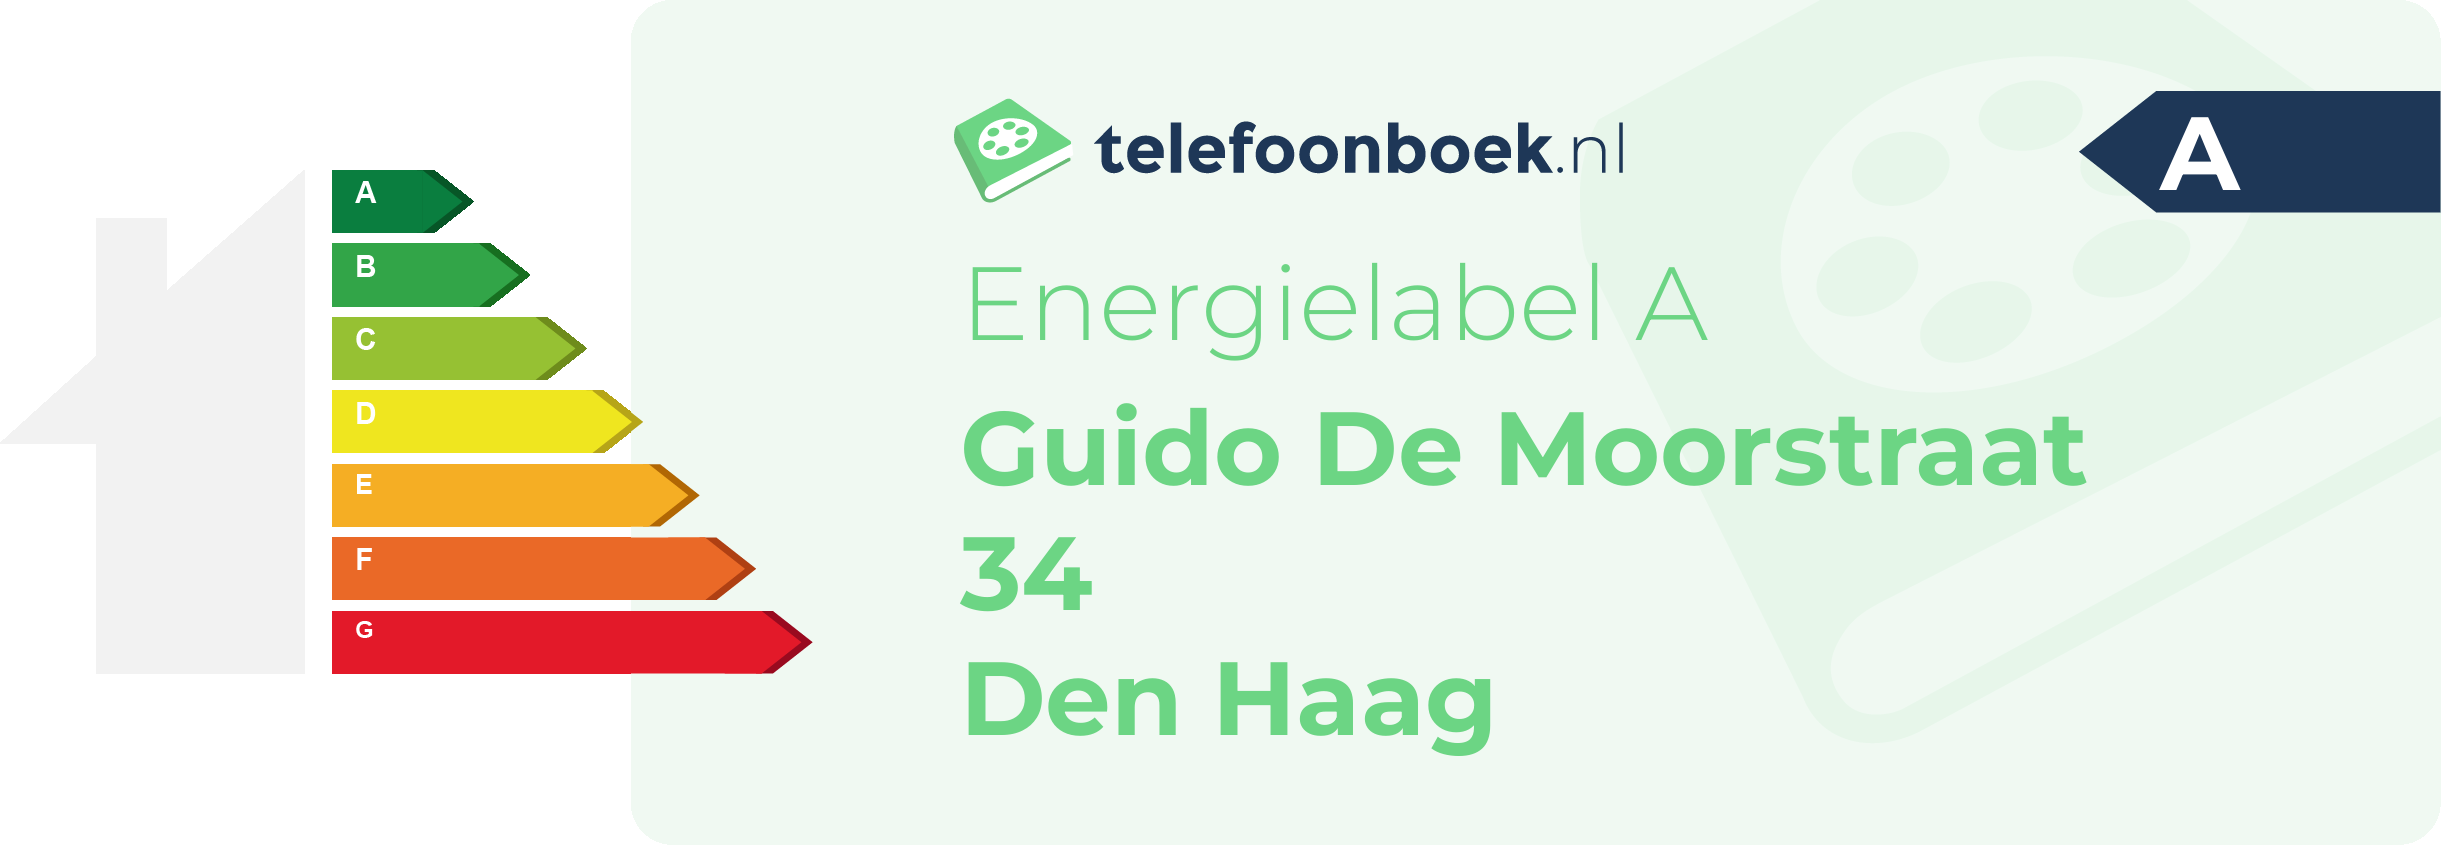 Energielabel Guido De Moorstraat 34 Den Haag